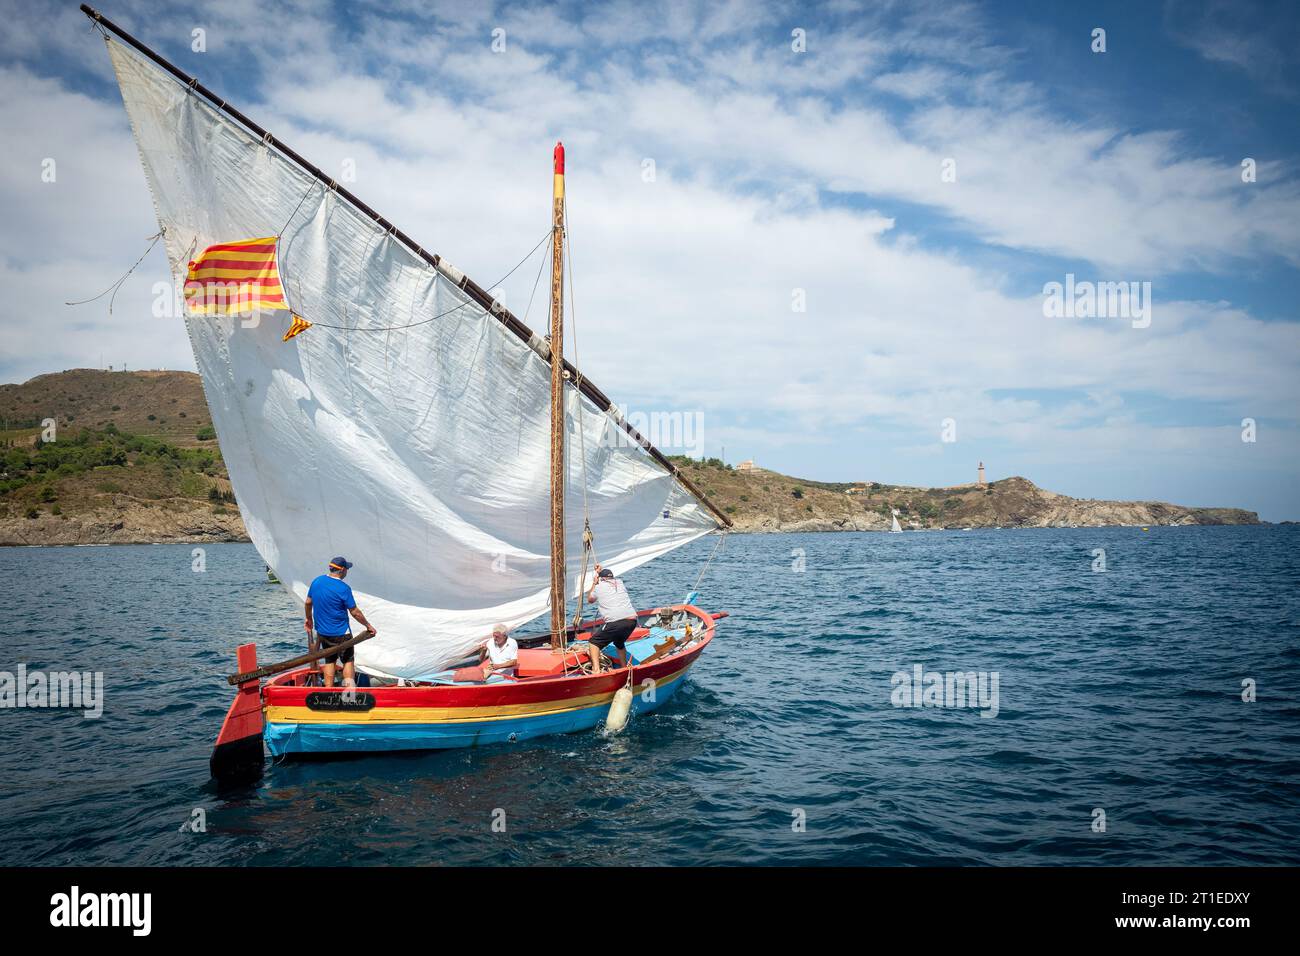 Régate « les voiles latines », vieux voiliers dans la baie de Paulilles. Barges catalanes entre Port-Vendres et Banyuls, septembre 2022 Banque D'Images